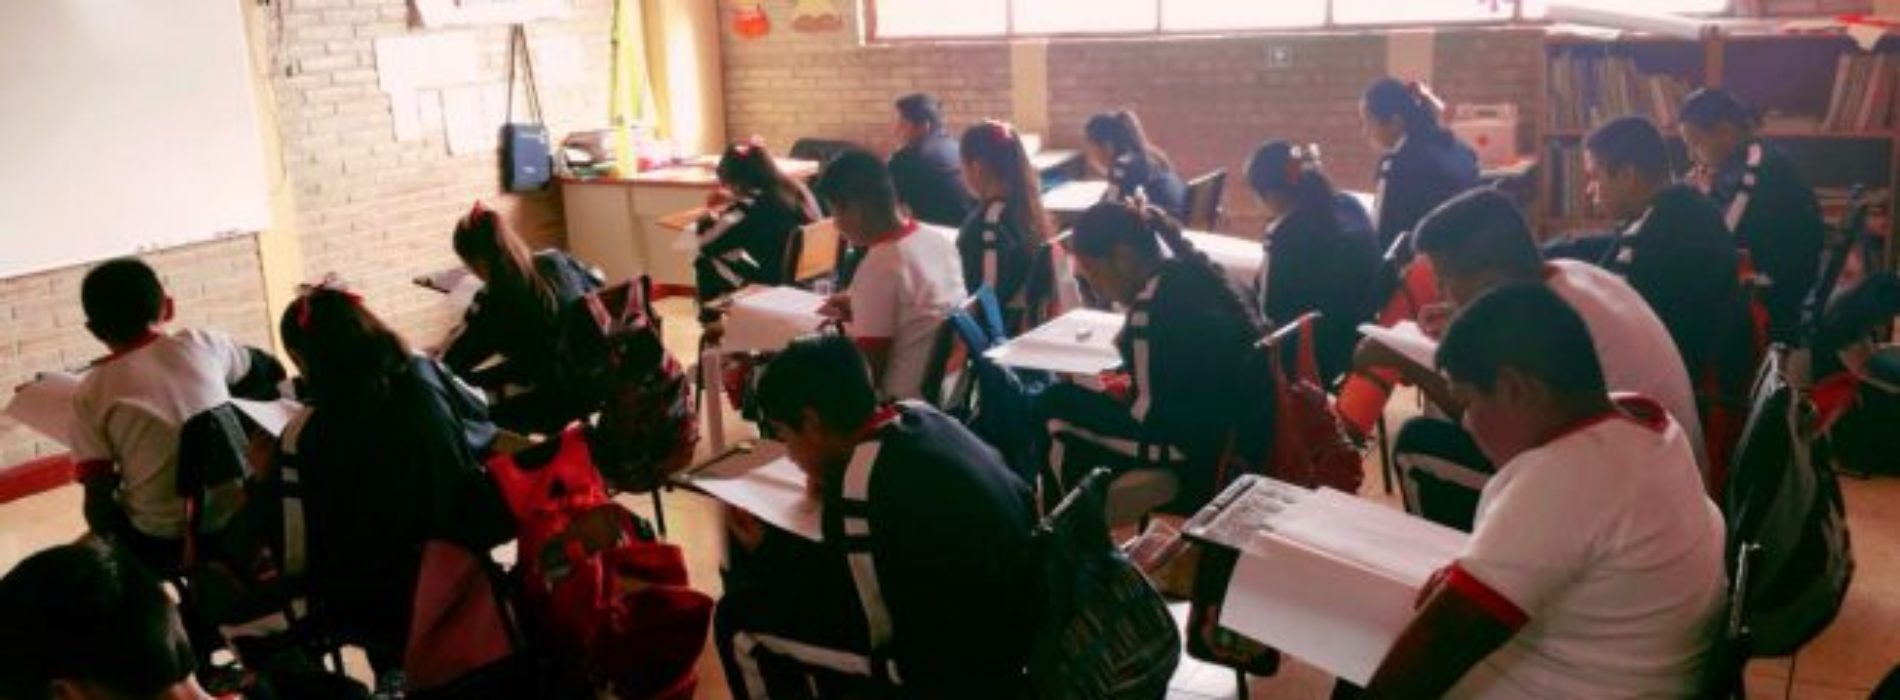 Aplican en Oaxaca evaluación “Planea Educación Básica
2018”